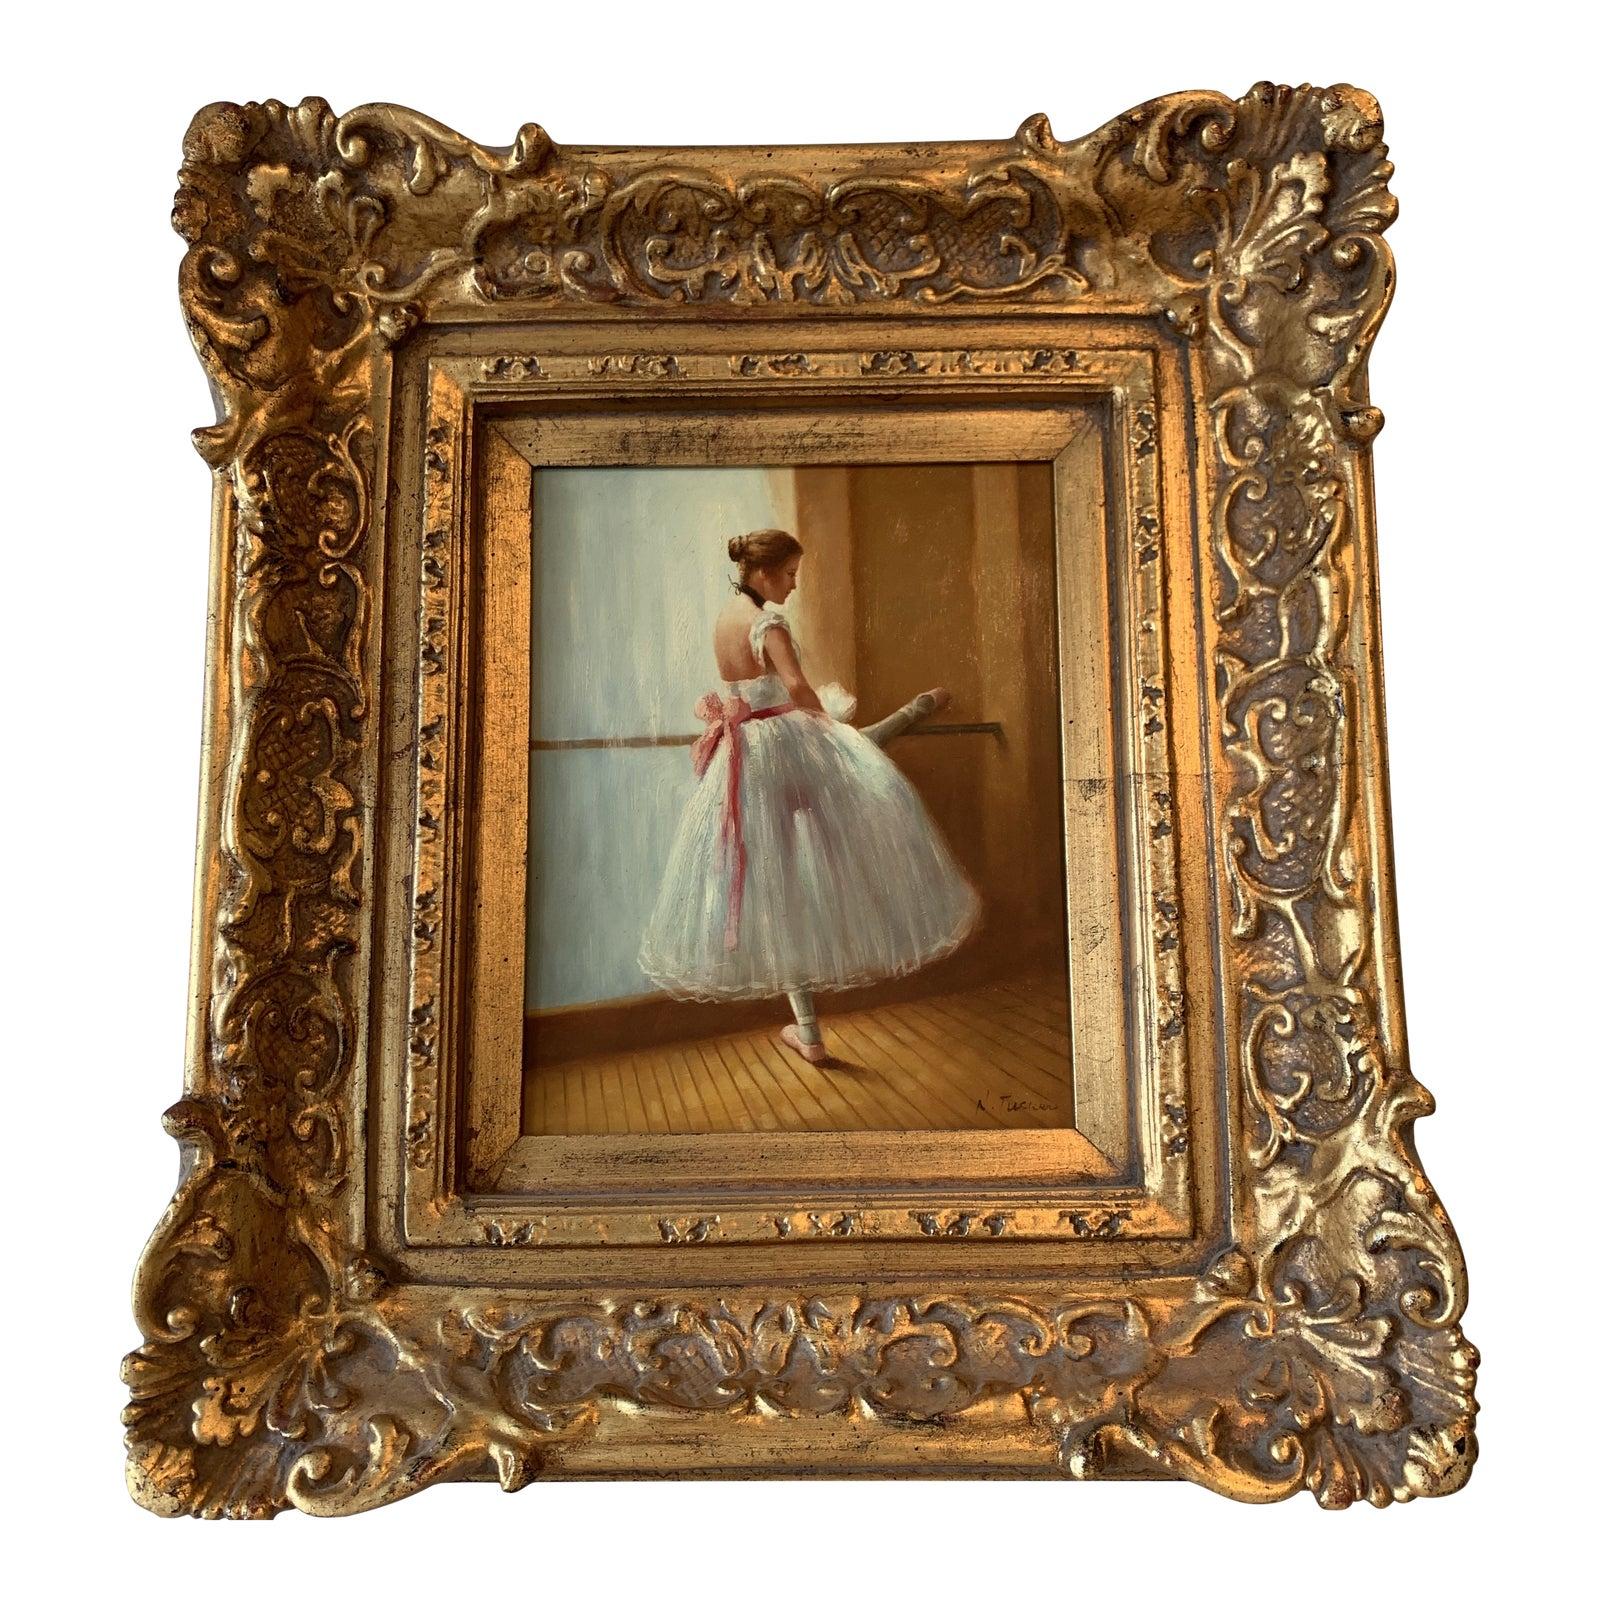 H Tucker Figurative Painting - 20th Century European Ballerina Oil